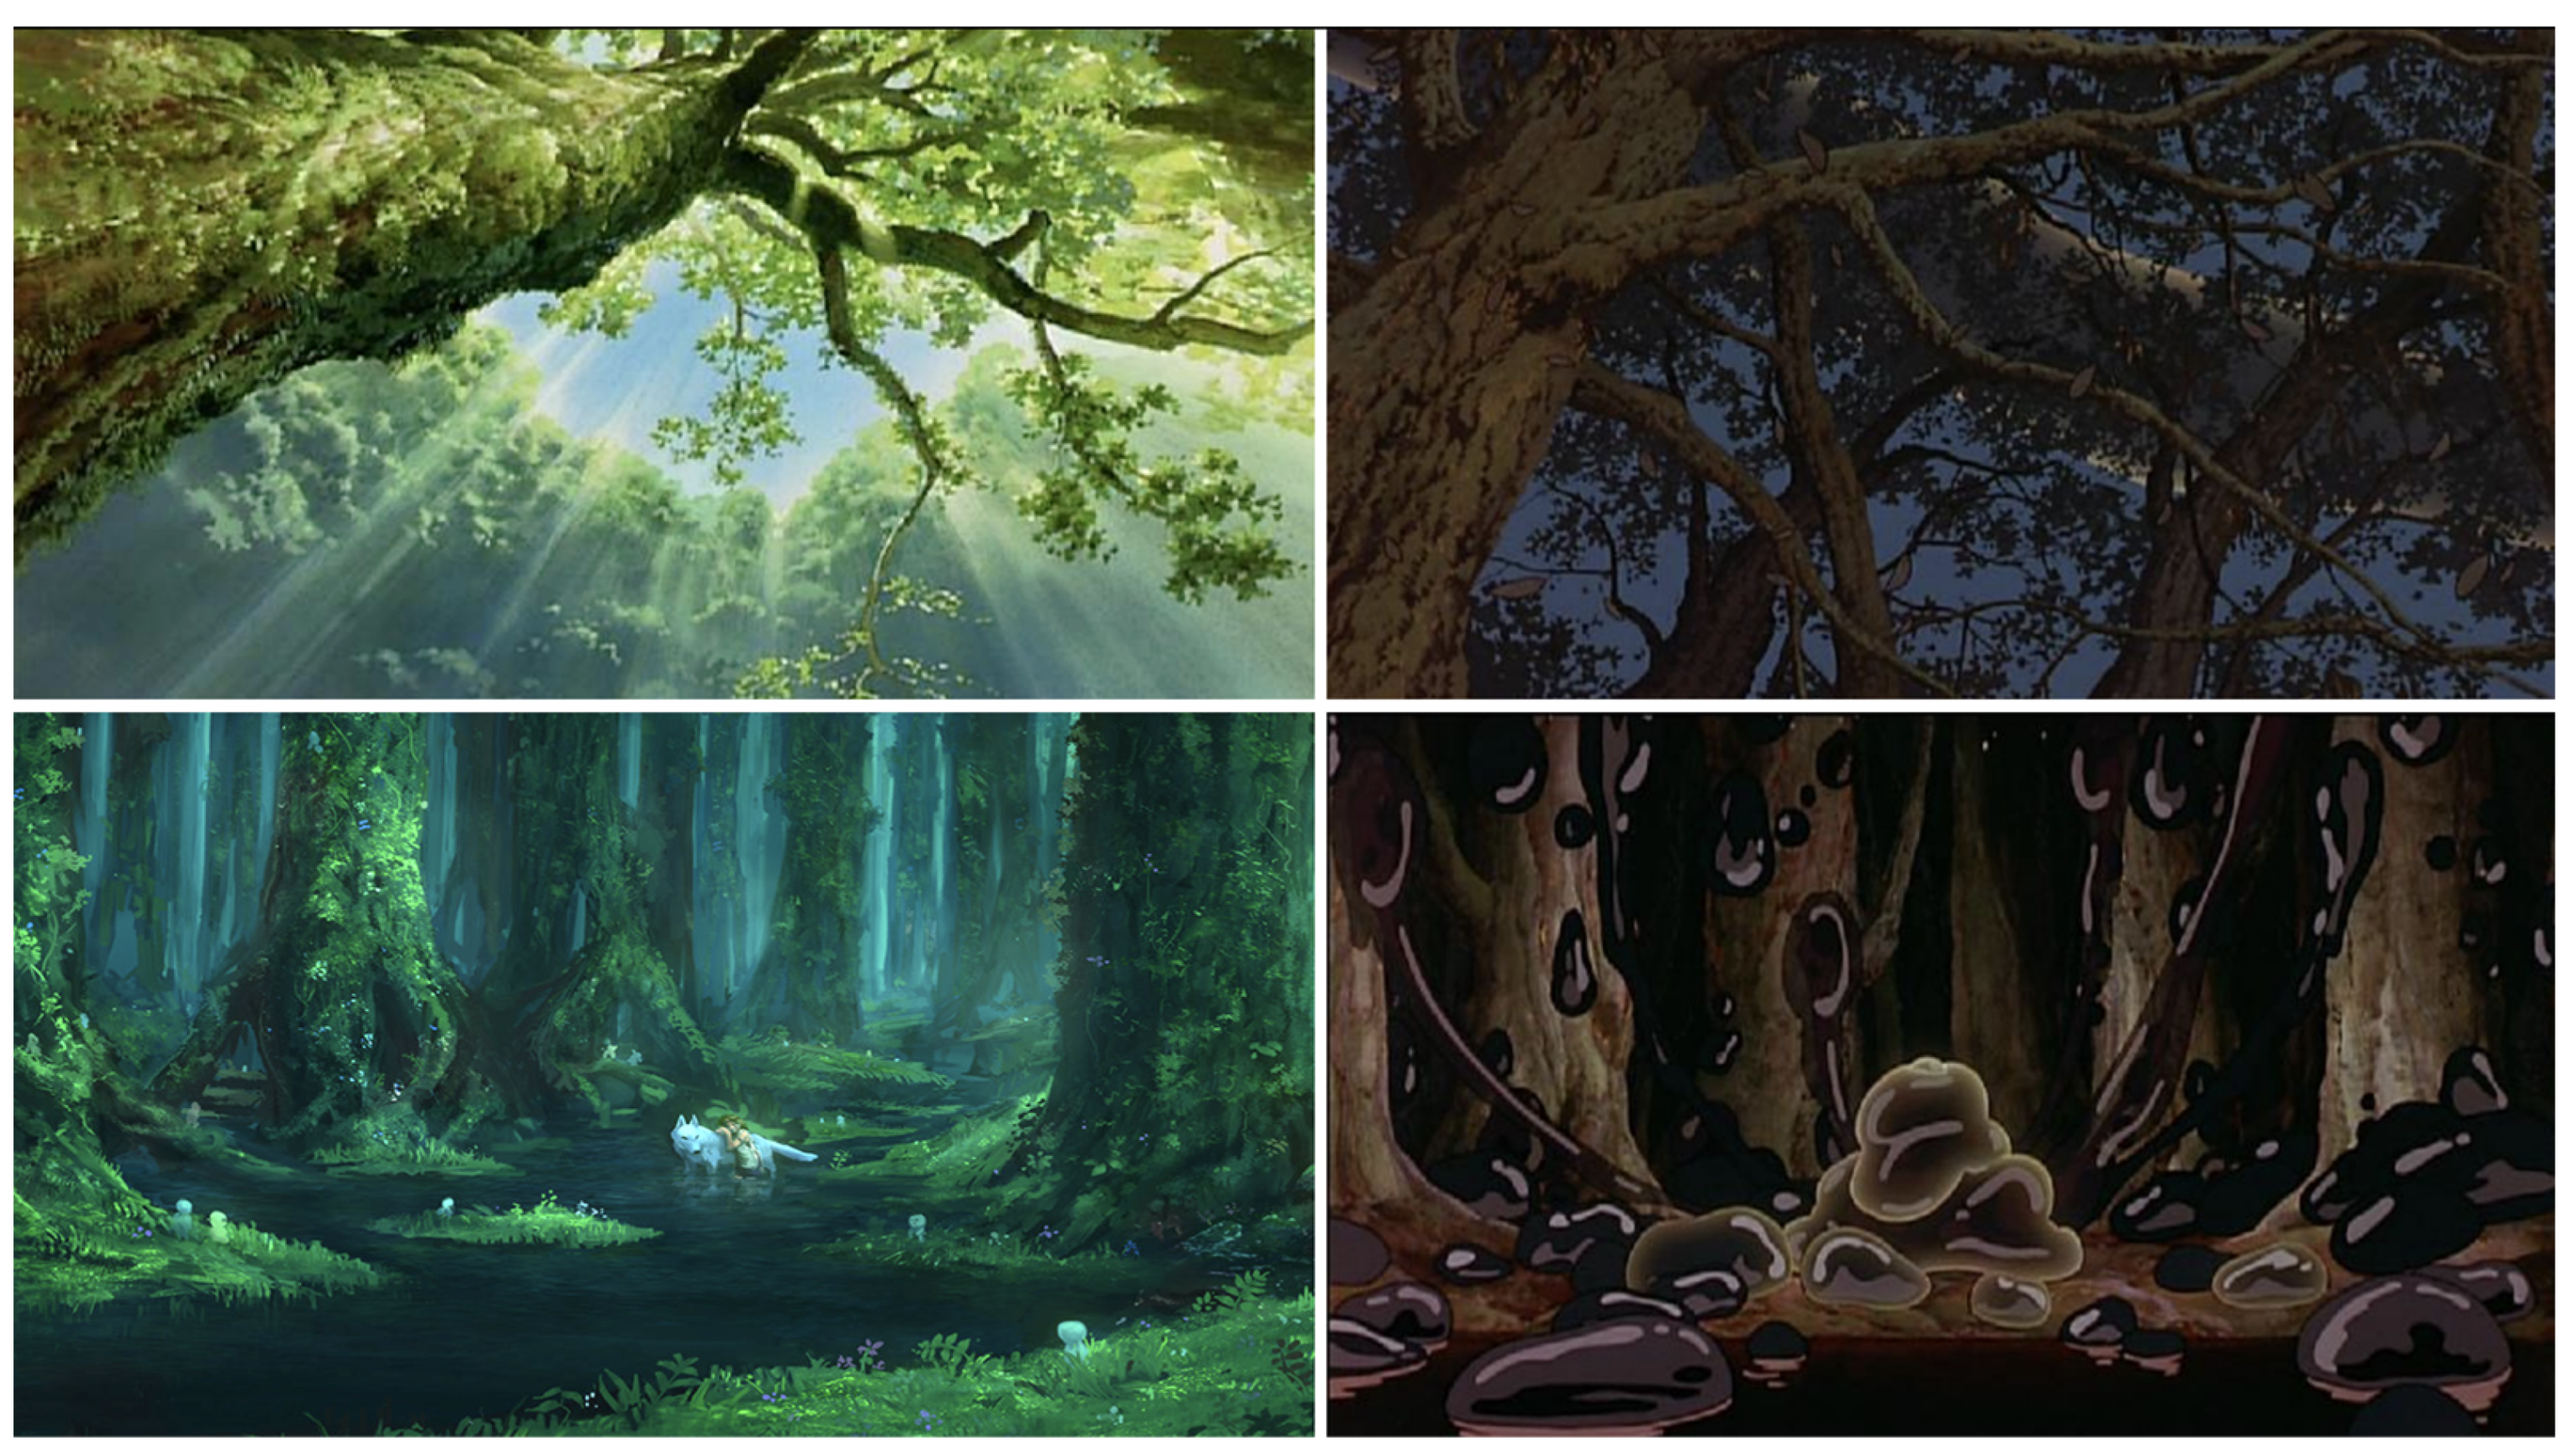 I mondi di Miyazaki. Percorsi filosofici negli universi dell